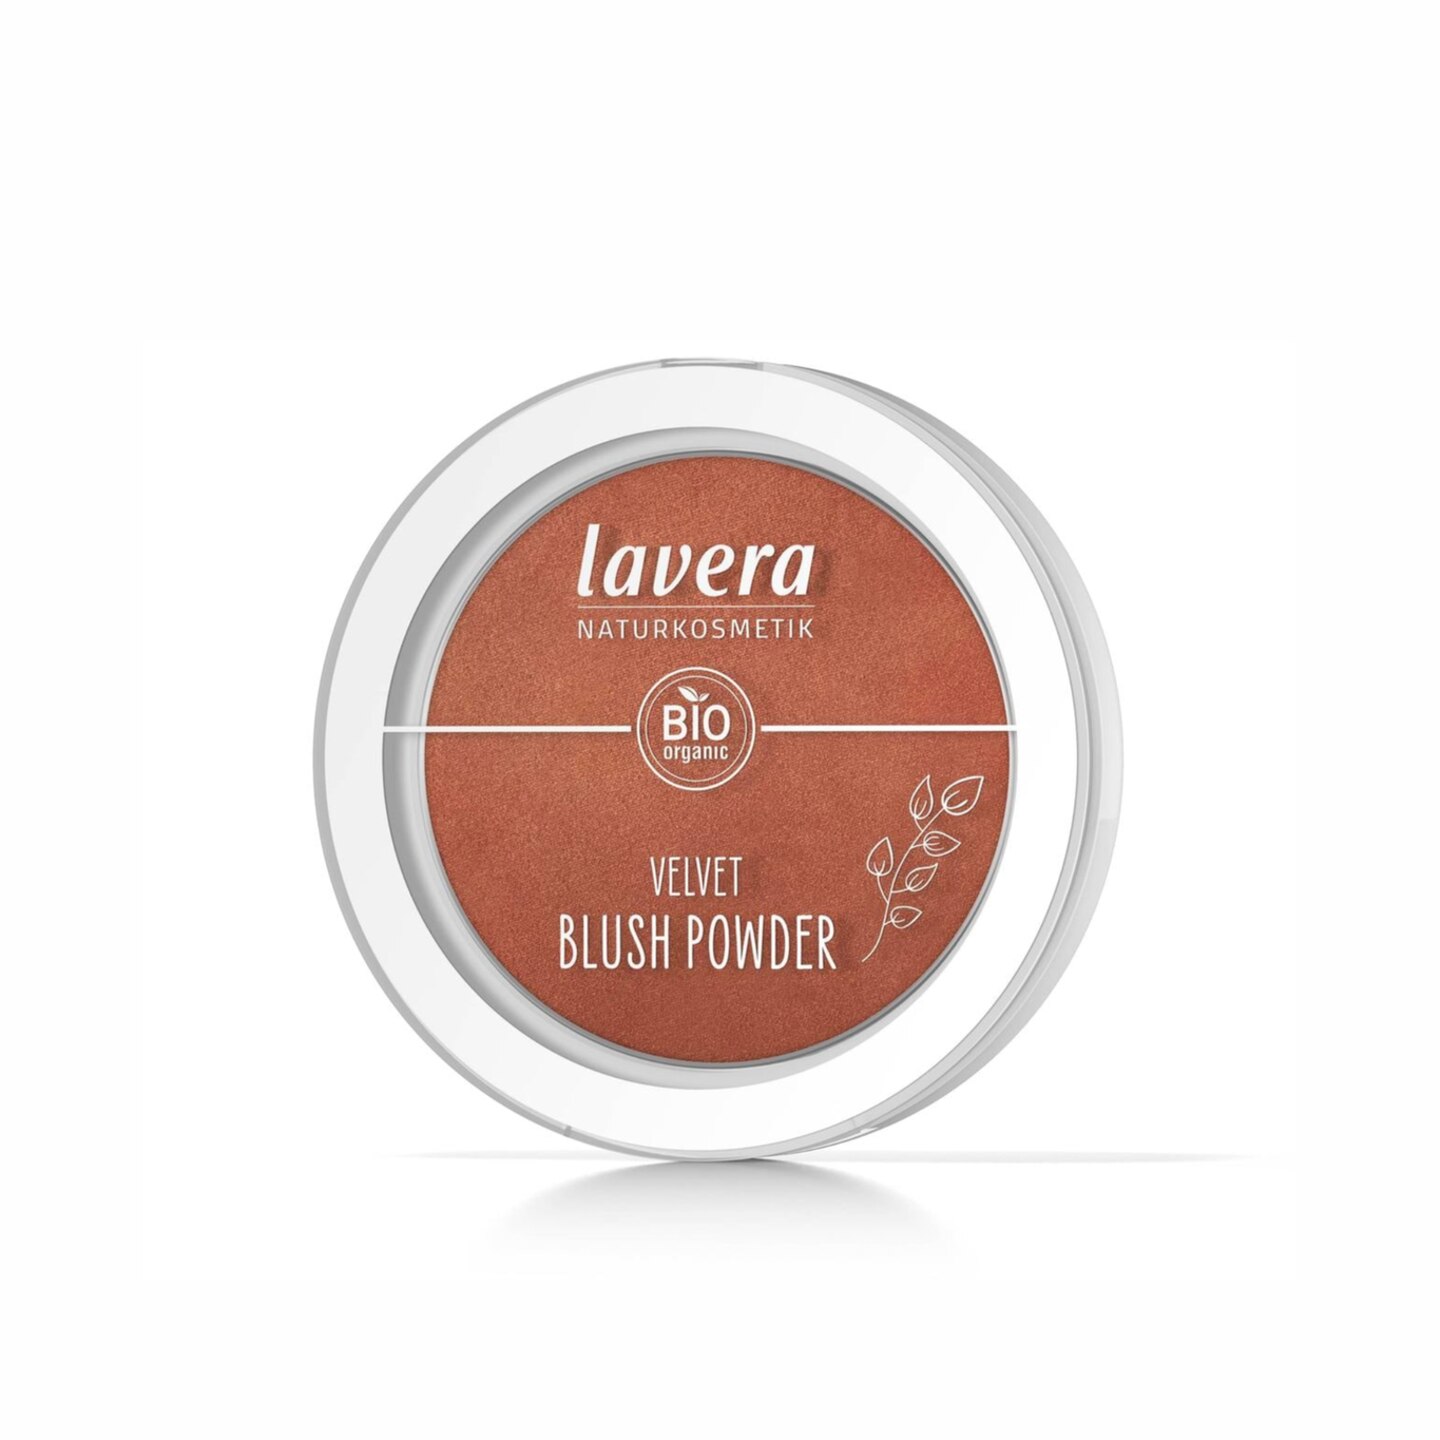 Rouge und Bronzer liegen manchmal näher zusammen, als wir denken. Dieses Lavera velvet Blush Powder hat einen schönen warmen Unterton für sonnengeküsste Wangen, perfekt für das gehypte "Latte Make-up". Um 8 Euro.